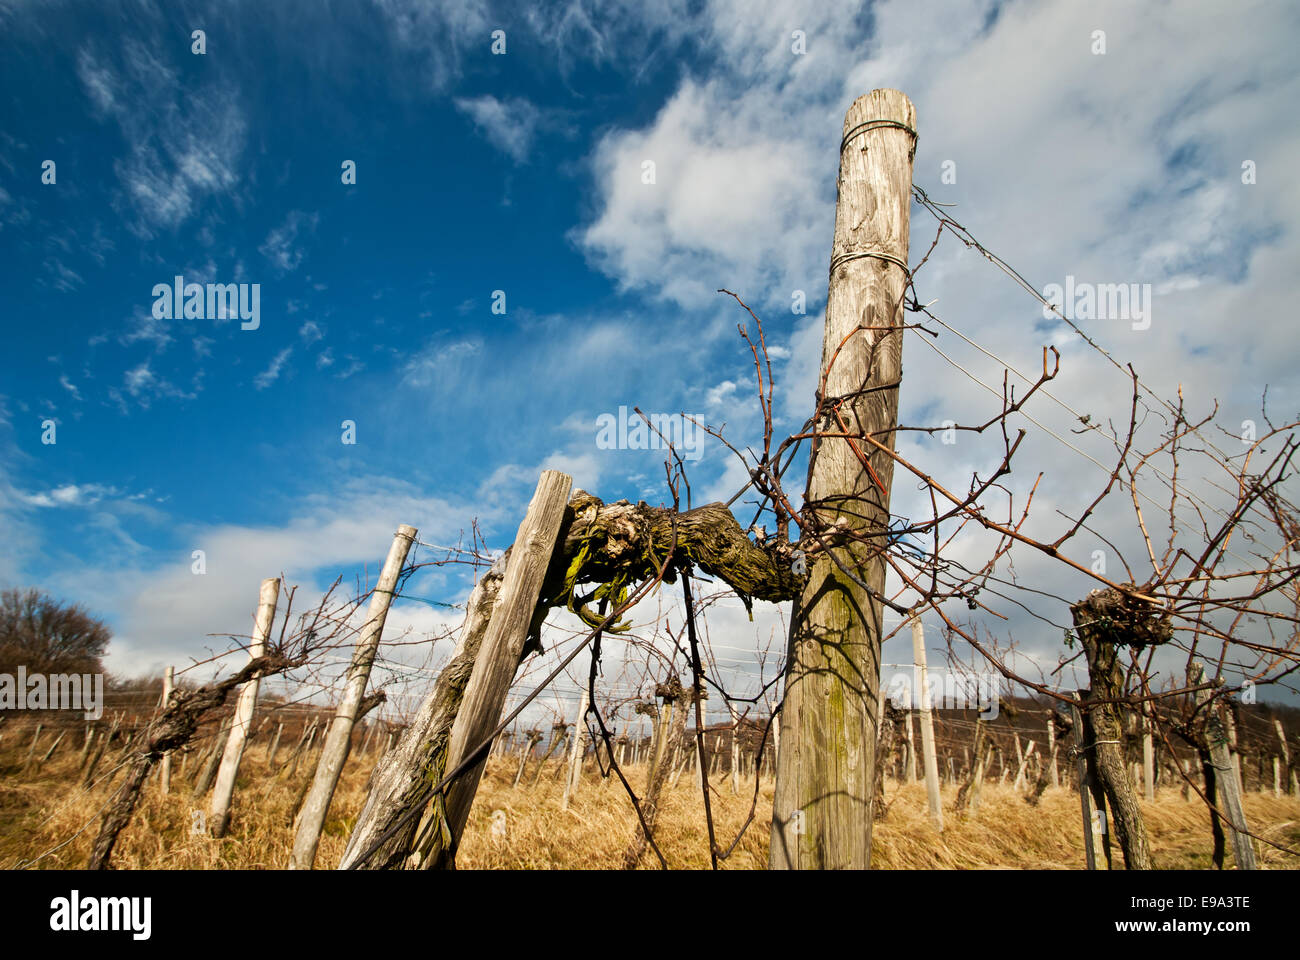 Vineyard in spring Stock Photo